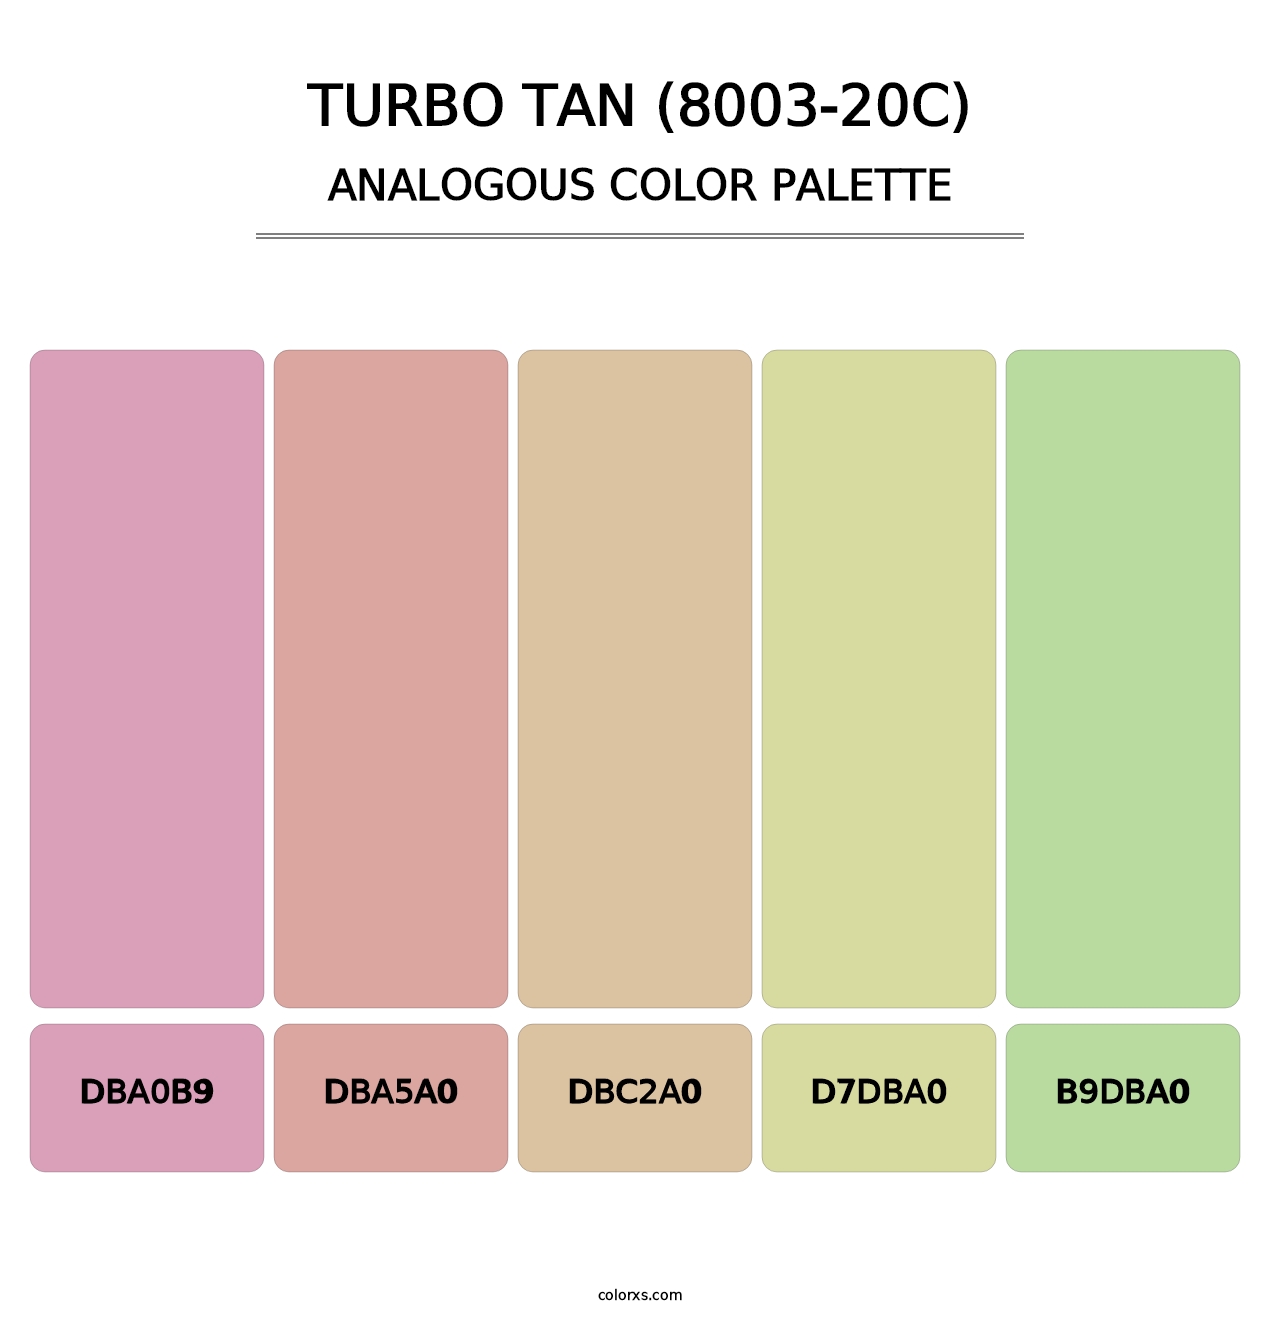 Turbo Tan (8003-20C) - Analogous Color Palette